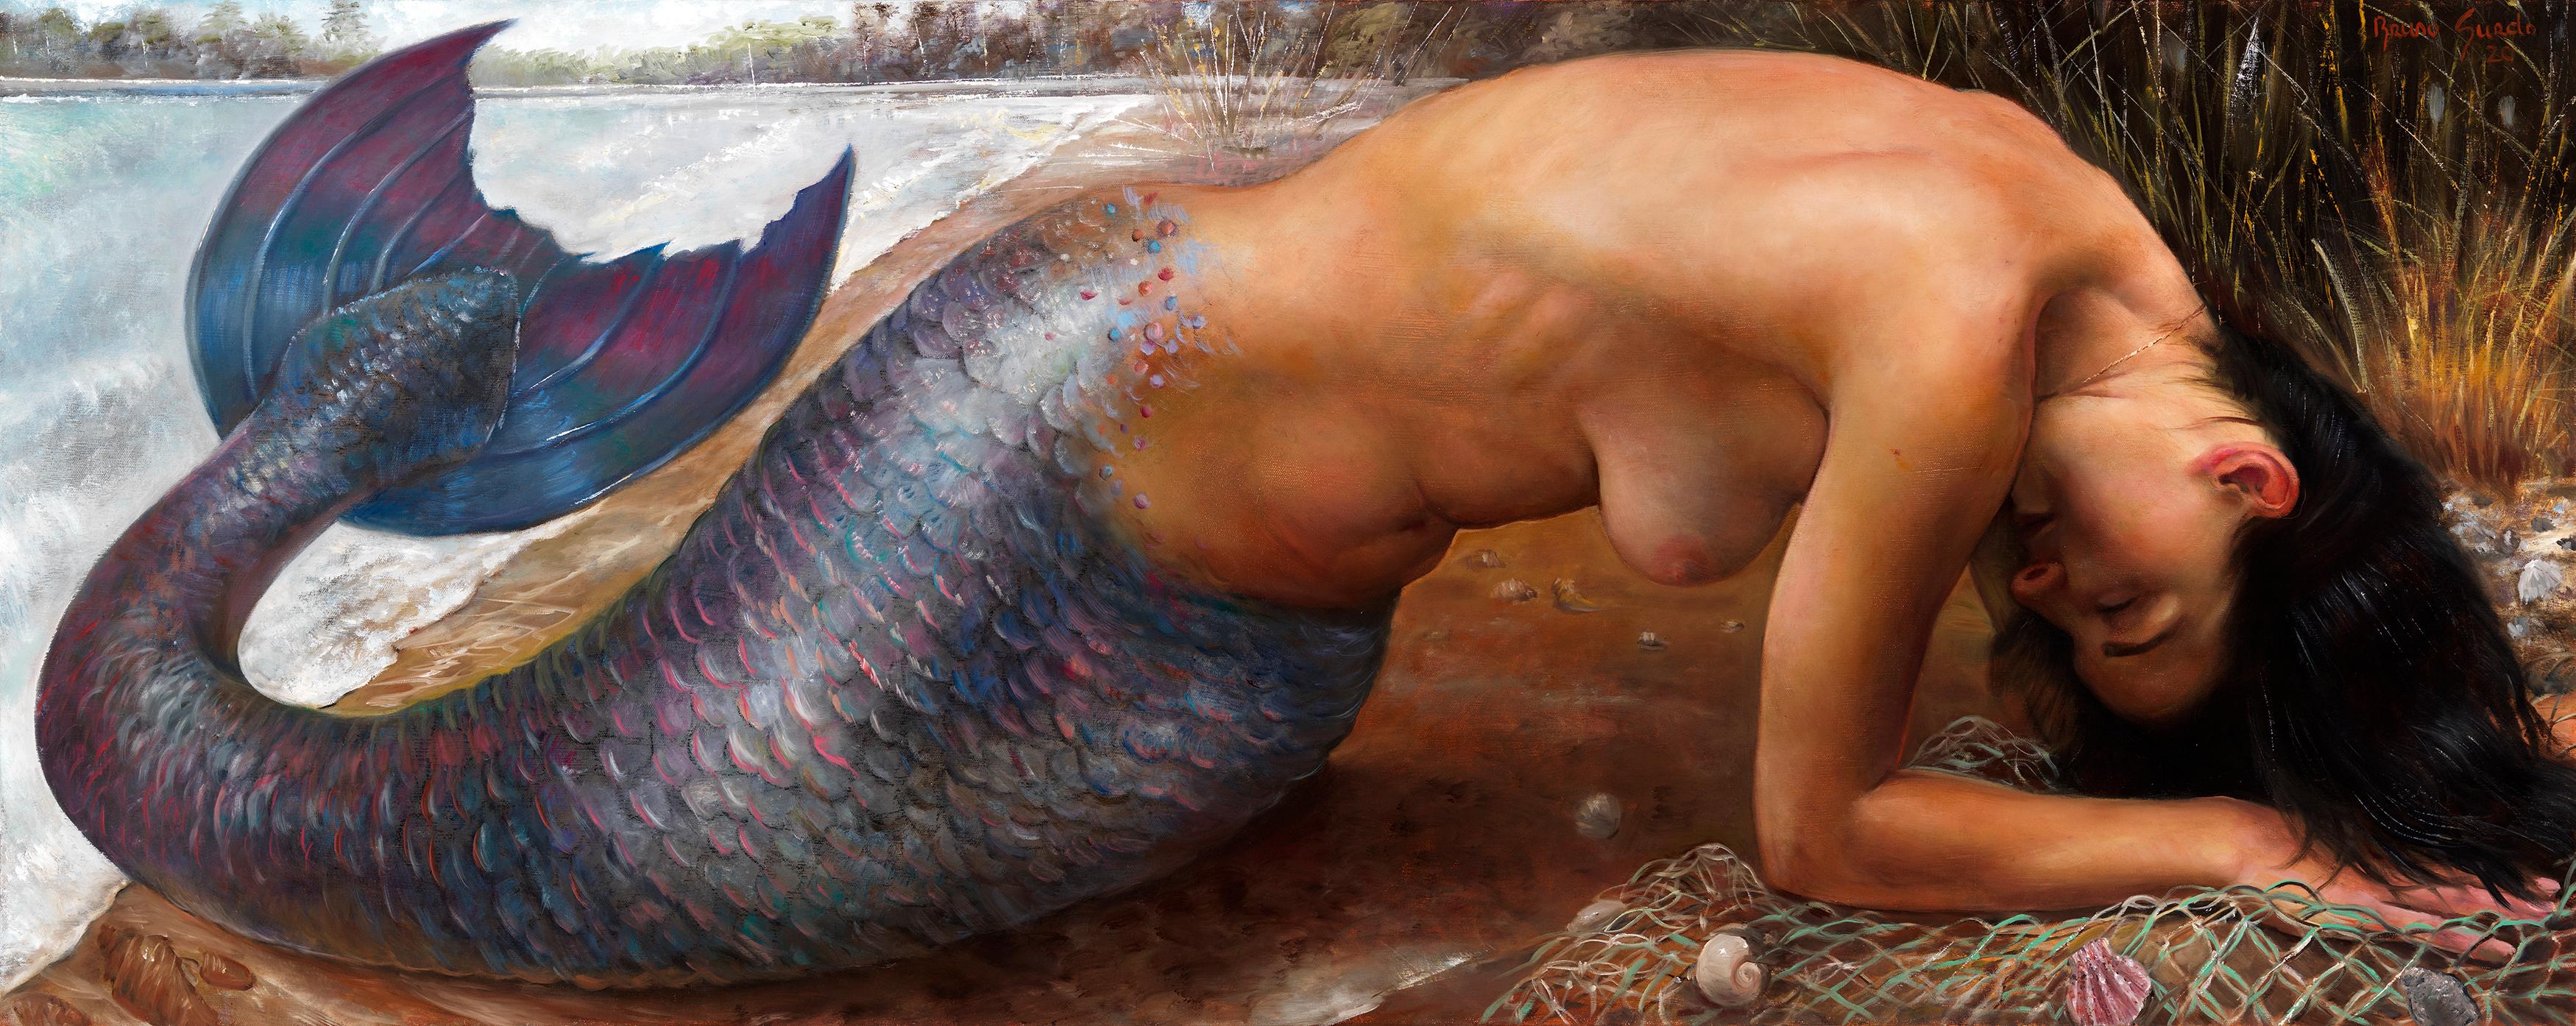 Nude Painting Bruno Surdo - Mermaid submergée - Mermaid aux cheveux foncés et à la peau égale émergeant de l'eau